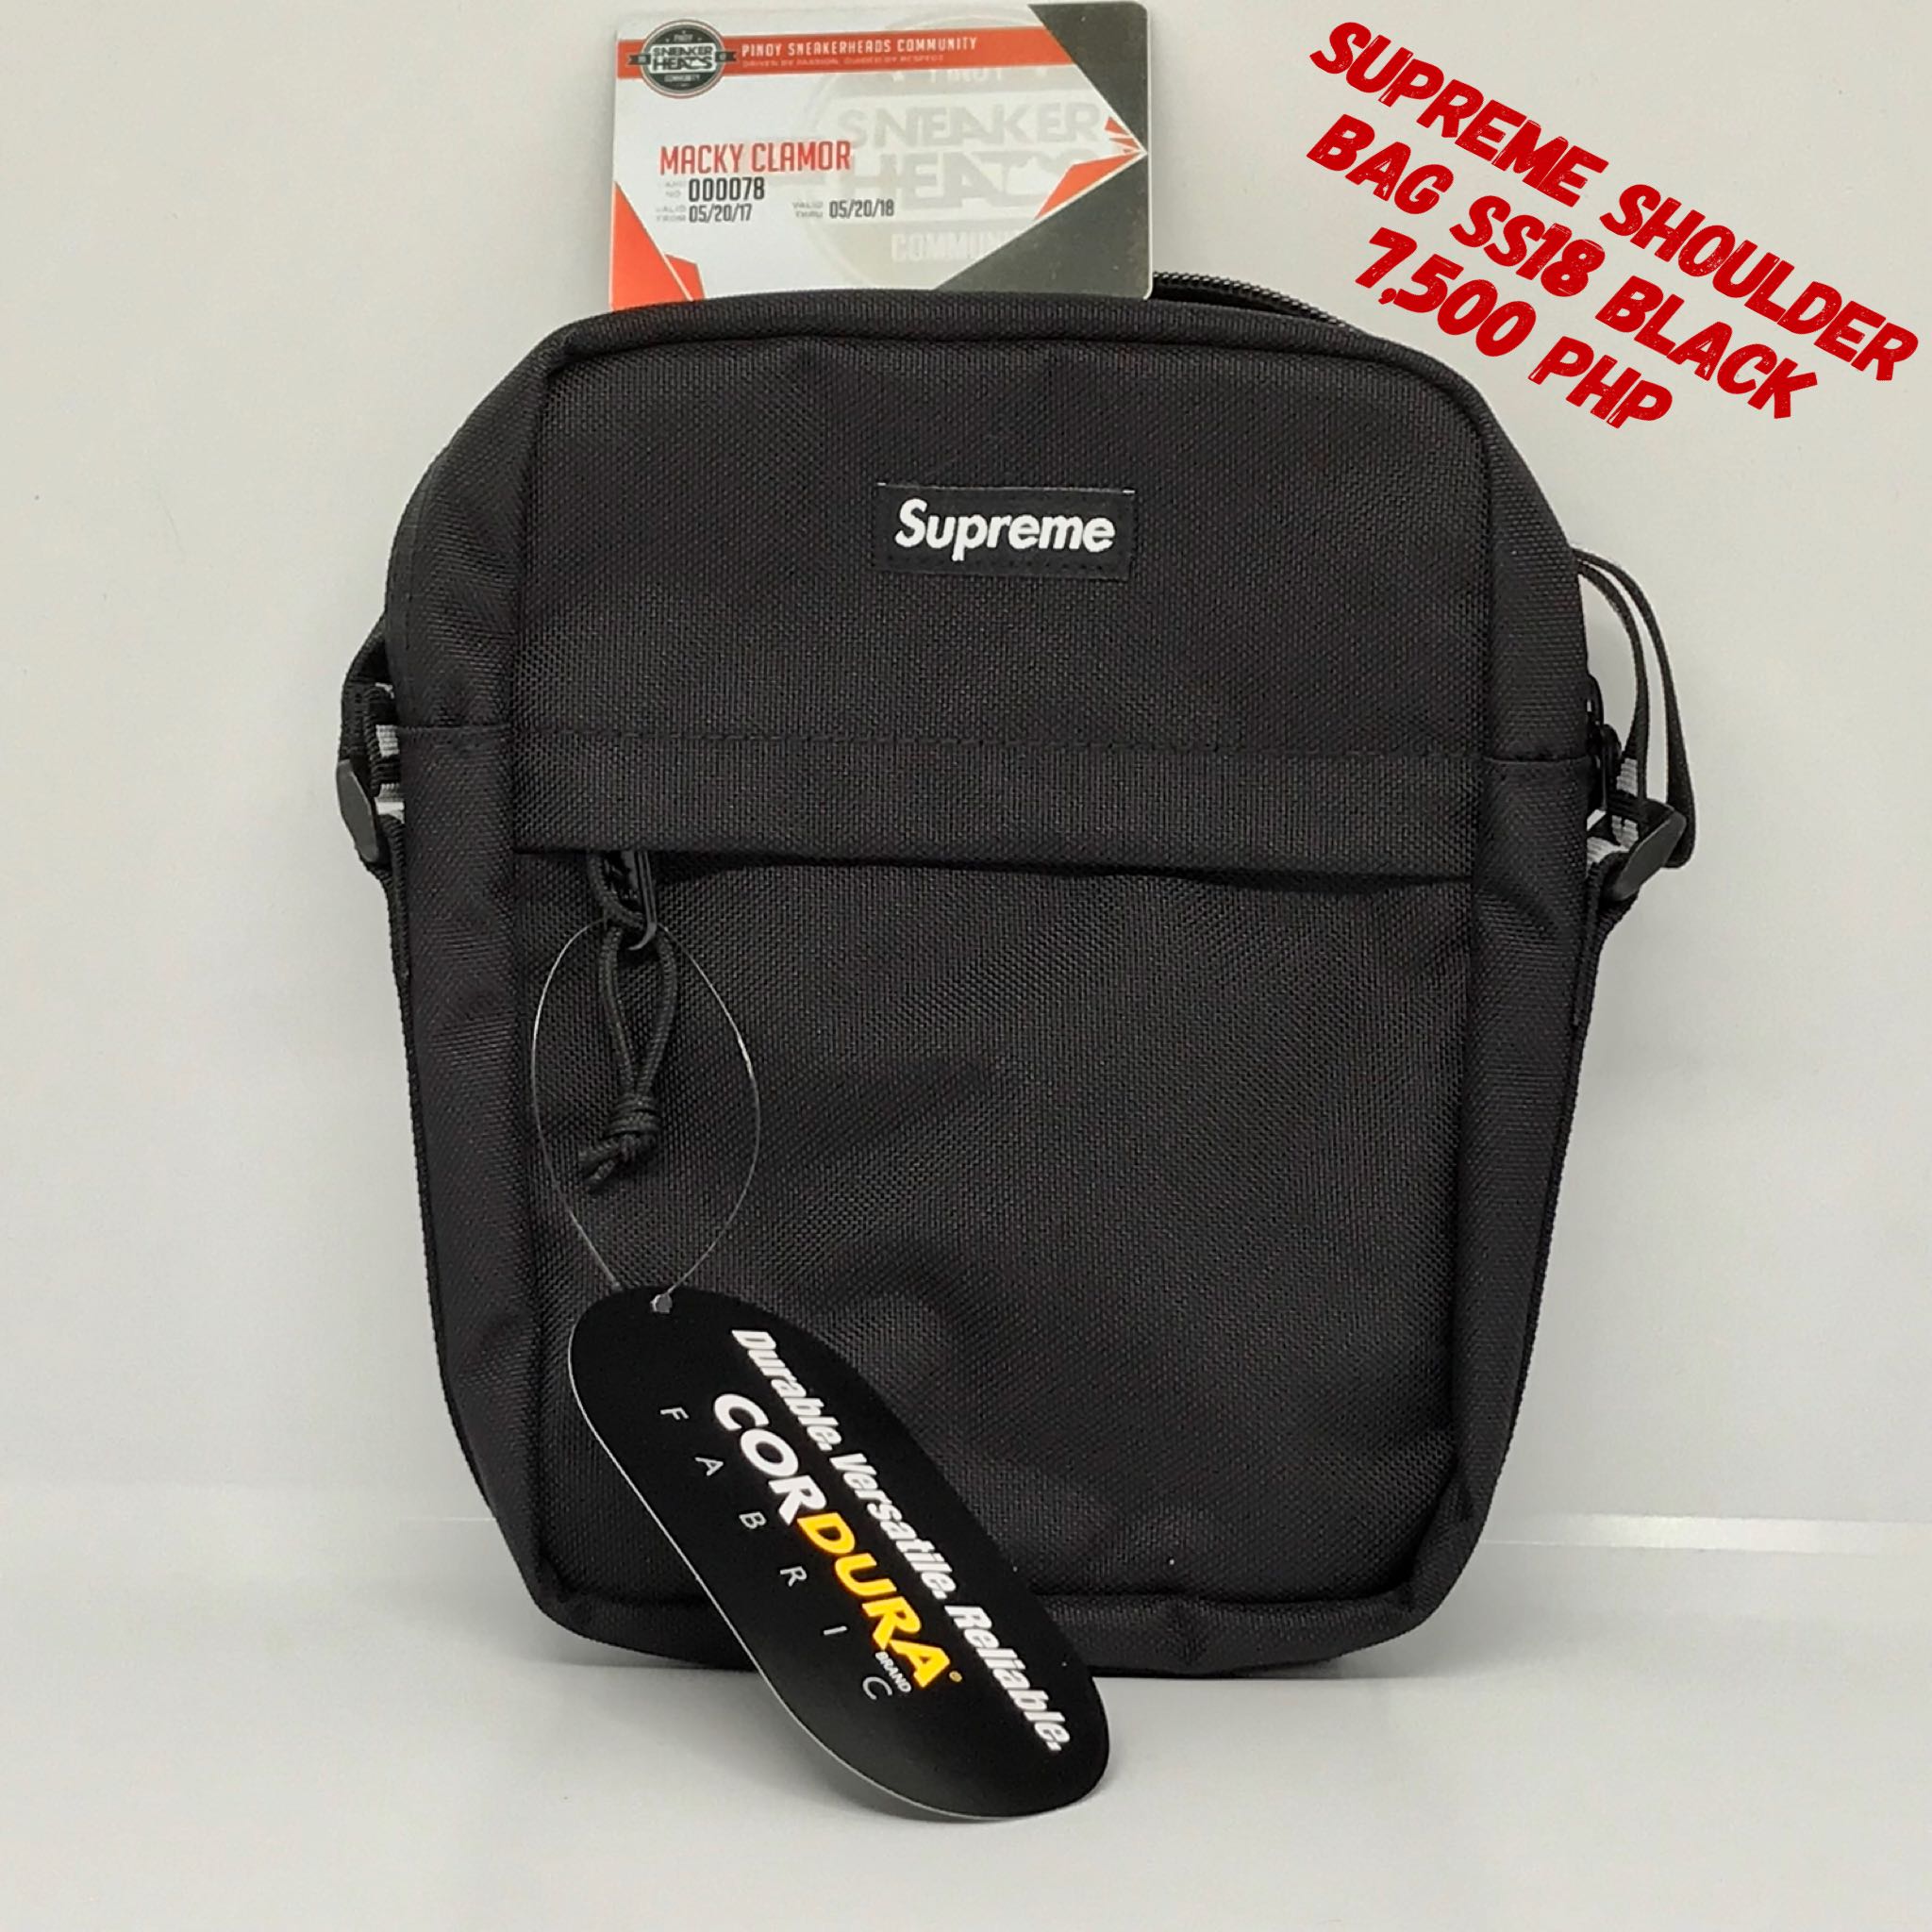 Supreme Shoulder Bag Ss18 Black Fake - Just Me and Supreme